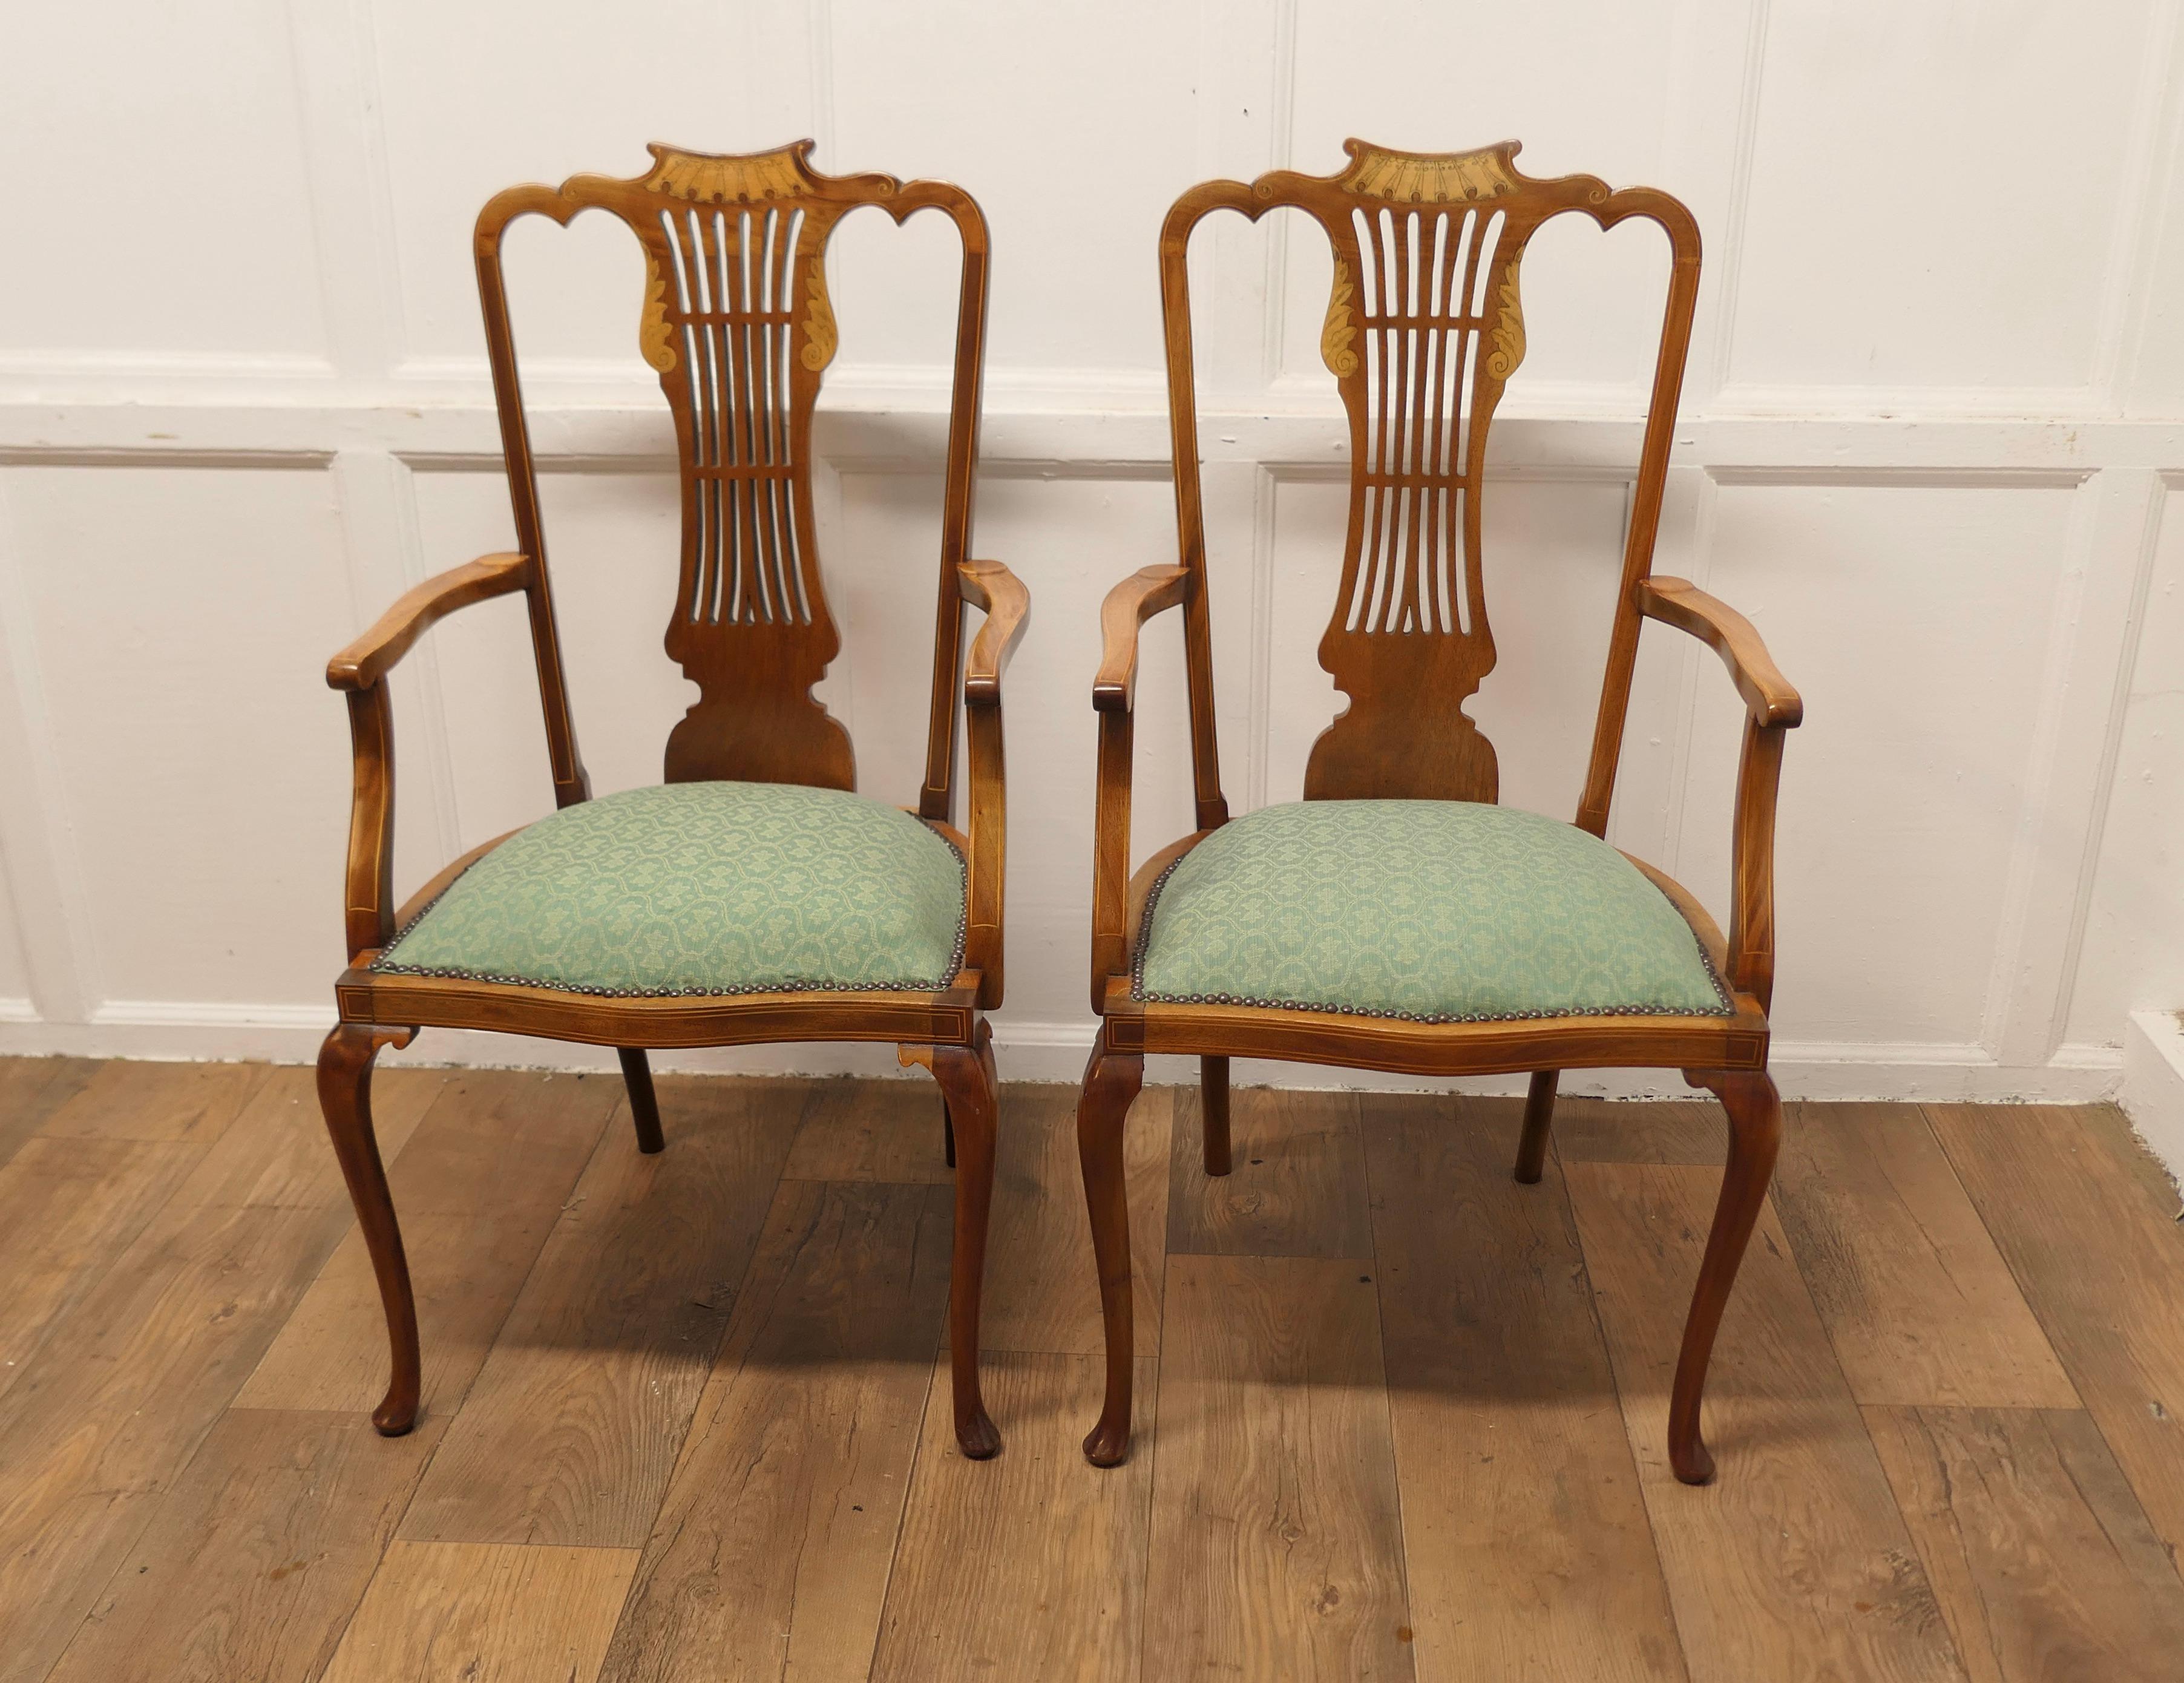 Ein Paar elegante edwardianische gepolsterte  Sessel 

Dies ist ein sehr hübsches Paar Edwardian Stühle, die Stühle haben ästhetische Bewegung durchbohrt und dekoriert zurück
Die Stühle sind aus hellem Nussbaumholz gefertigt und haben ein auf die